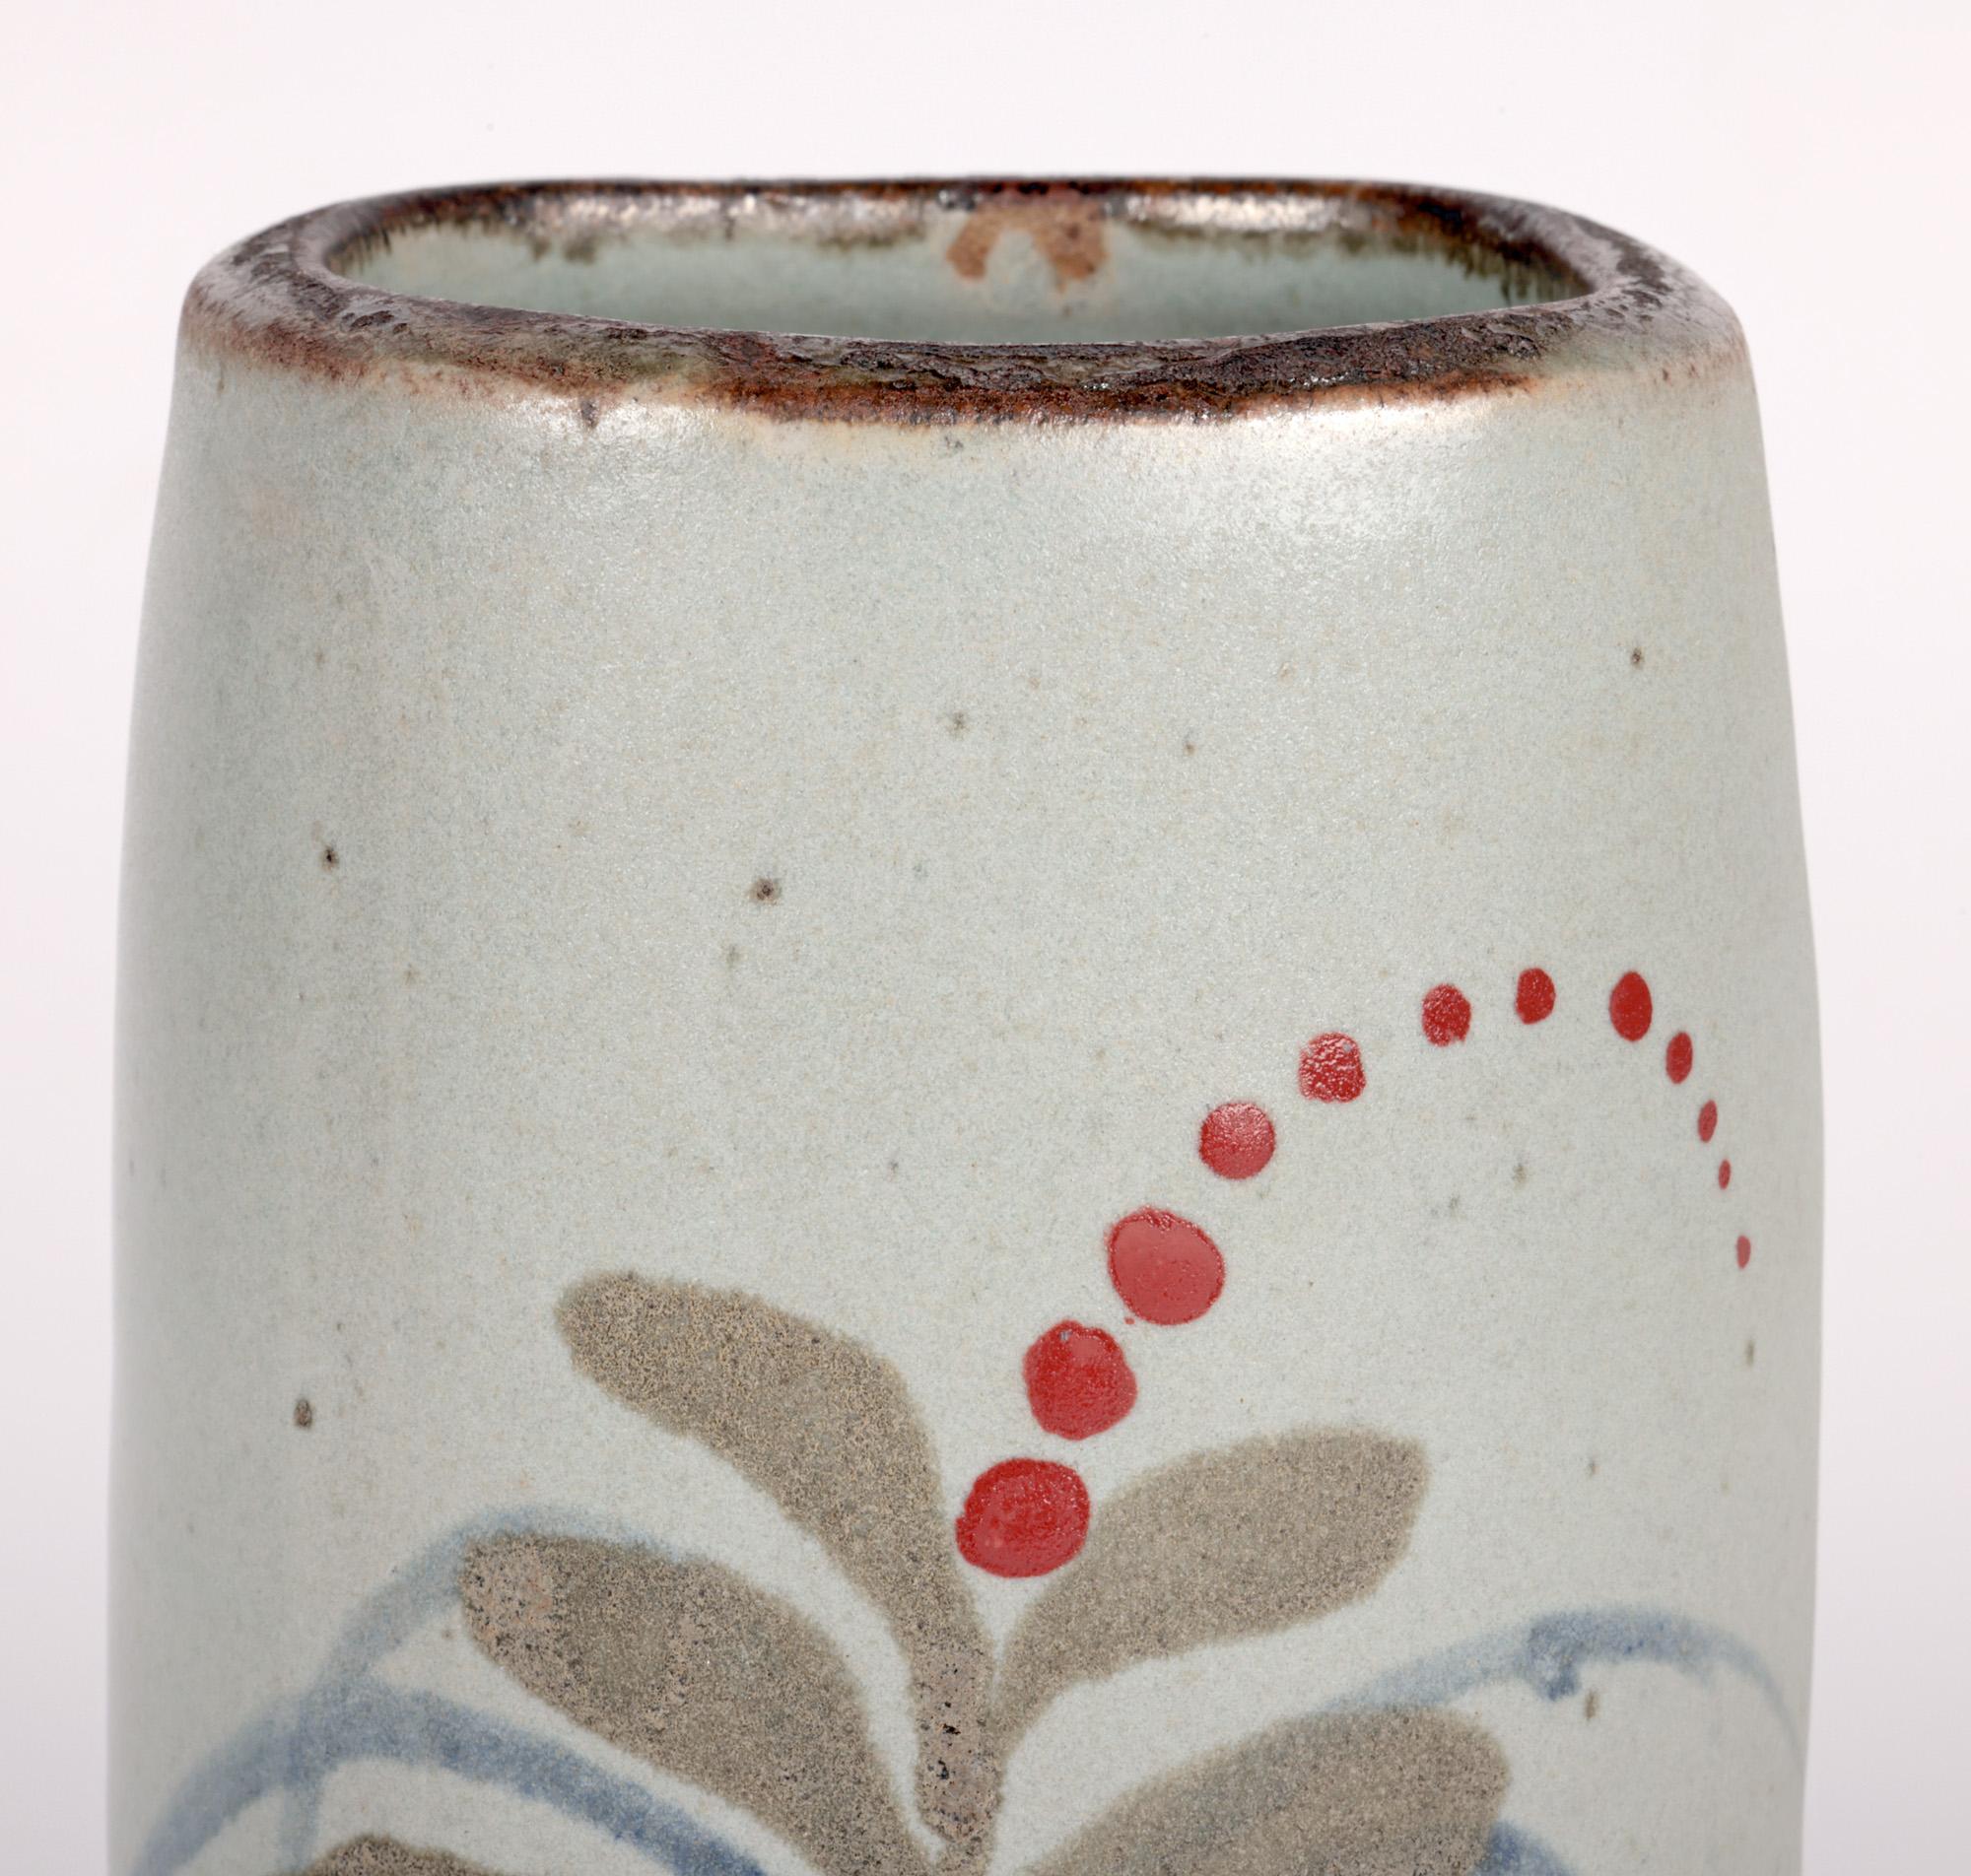 Un très élégant vase en grès de Lowerdown Pottery décoré du motif foxglove par le célèbre potier David Leach (britannique, 1911-2005) datant d'environ 1965. Le vase lourdement tourné à la main repose sur une base plate arrondie non émaillée. Le vase